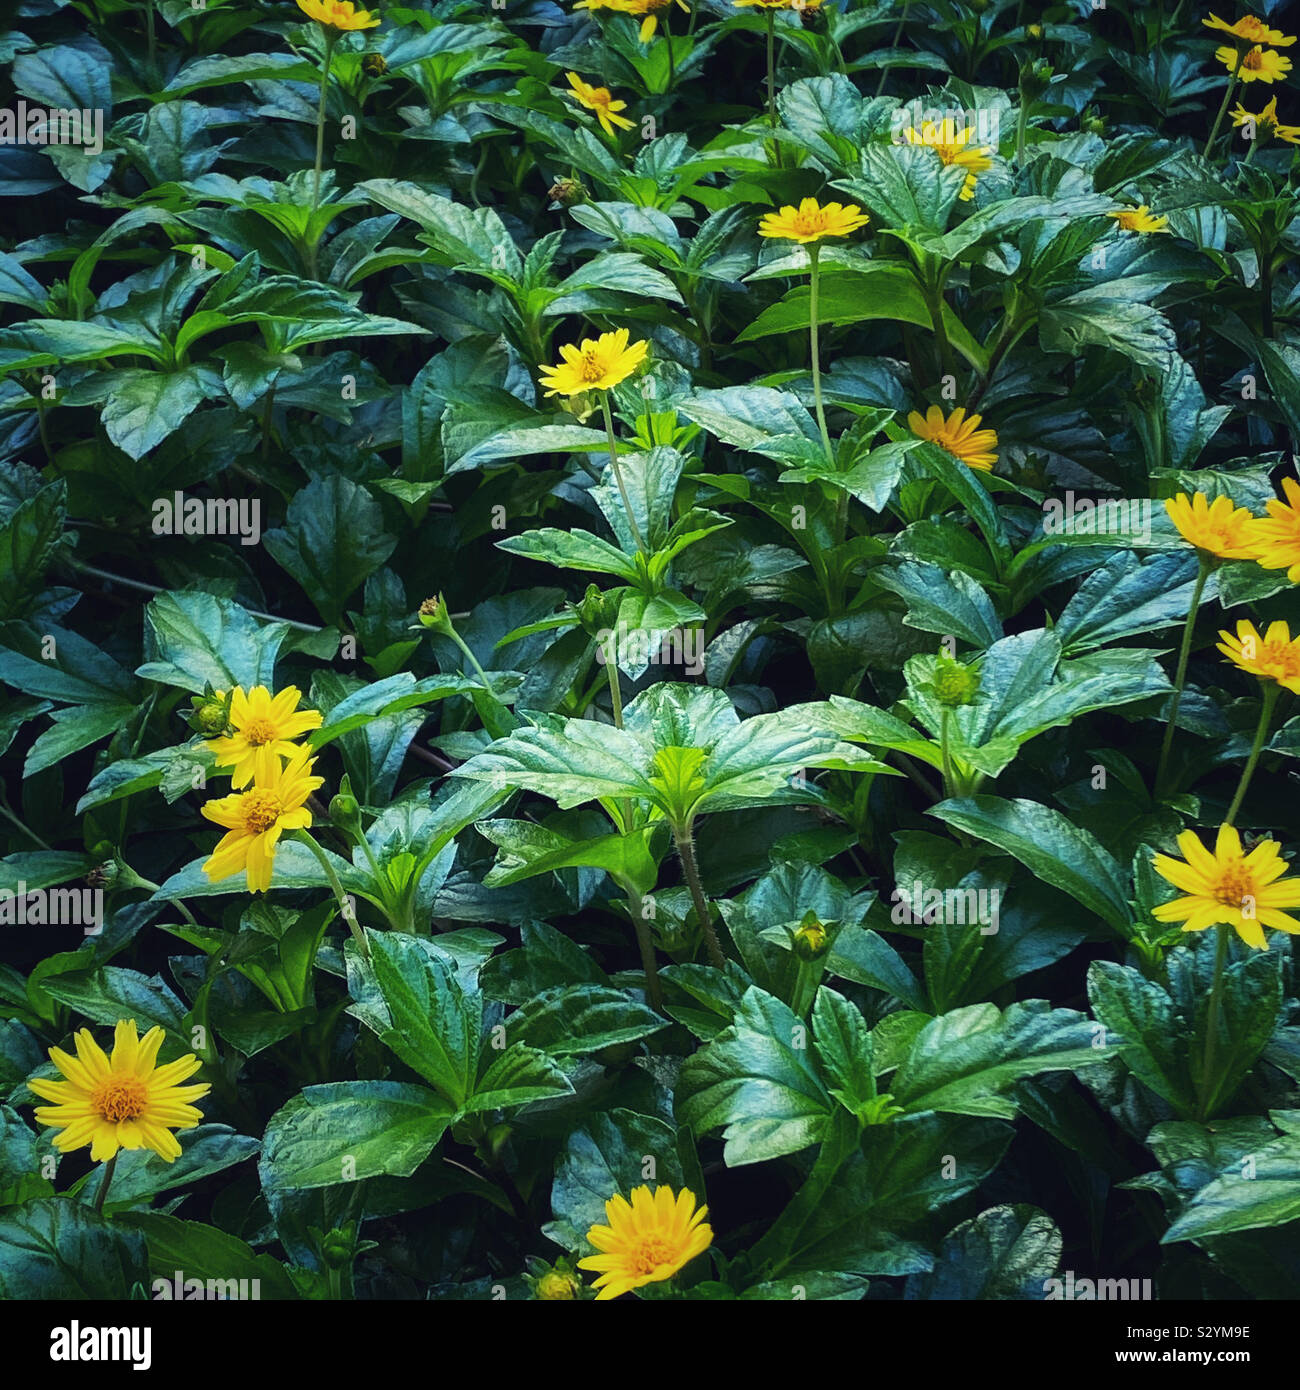 Floraison Wedelia arbuste au petites marguerites jaunes Banque D'Images